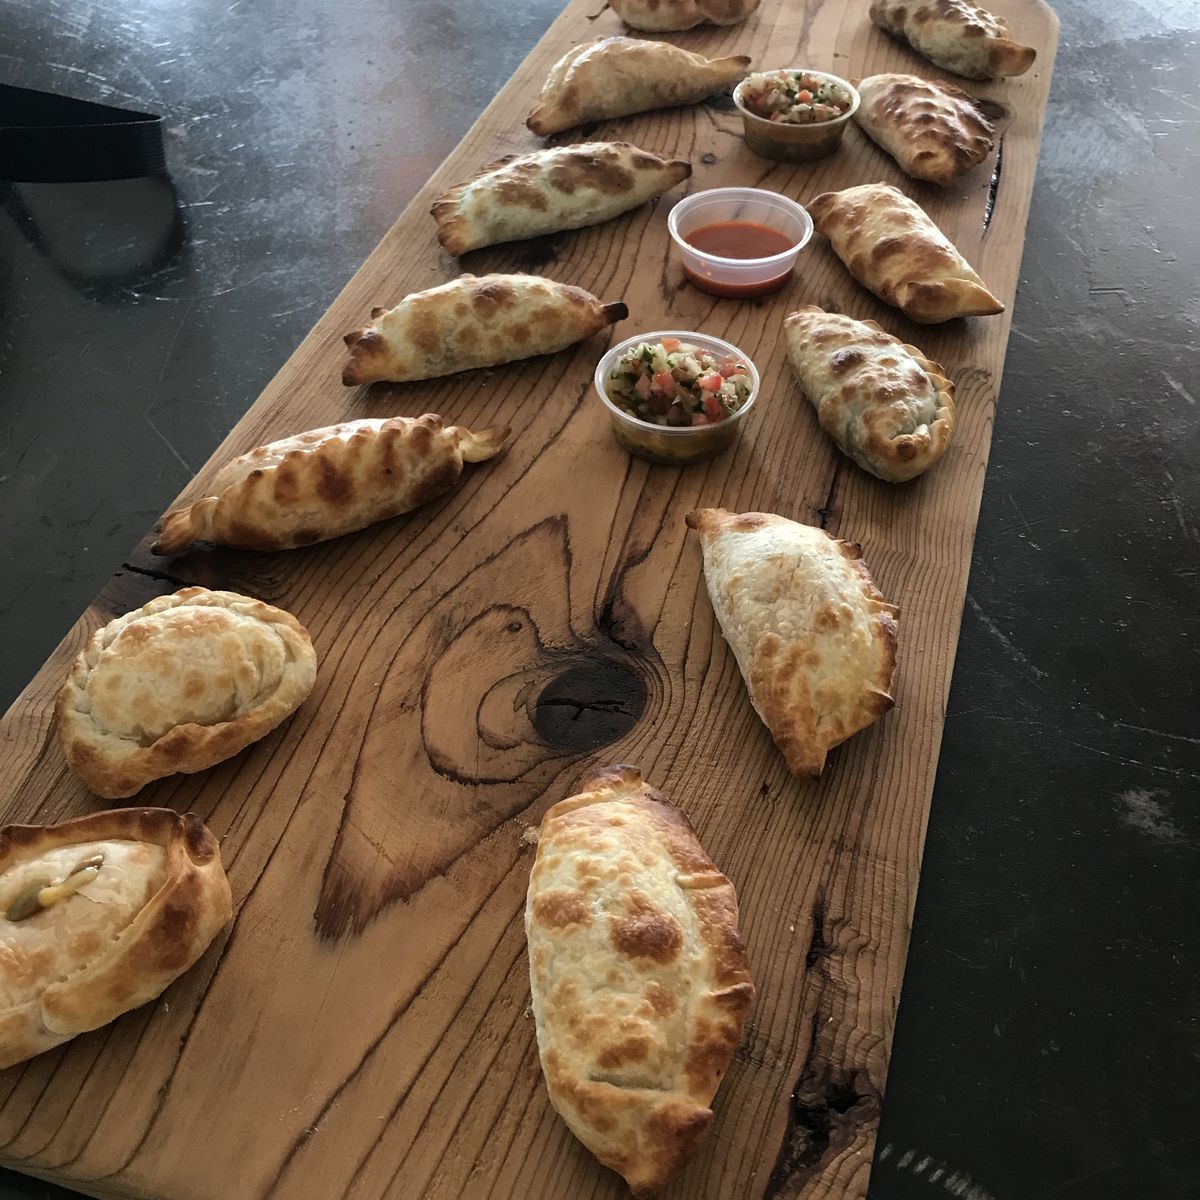 variety of empanadas on a cutting board